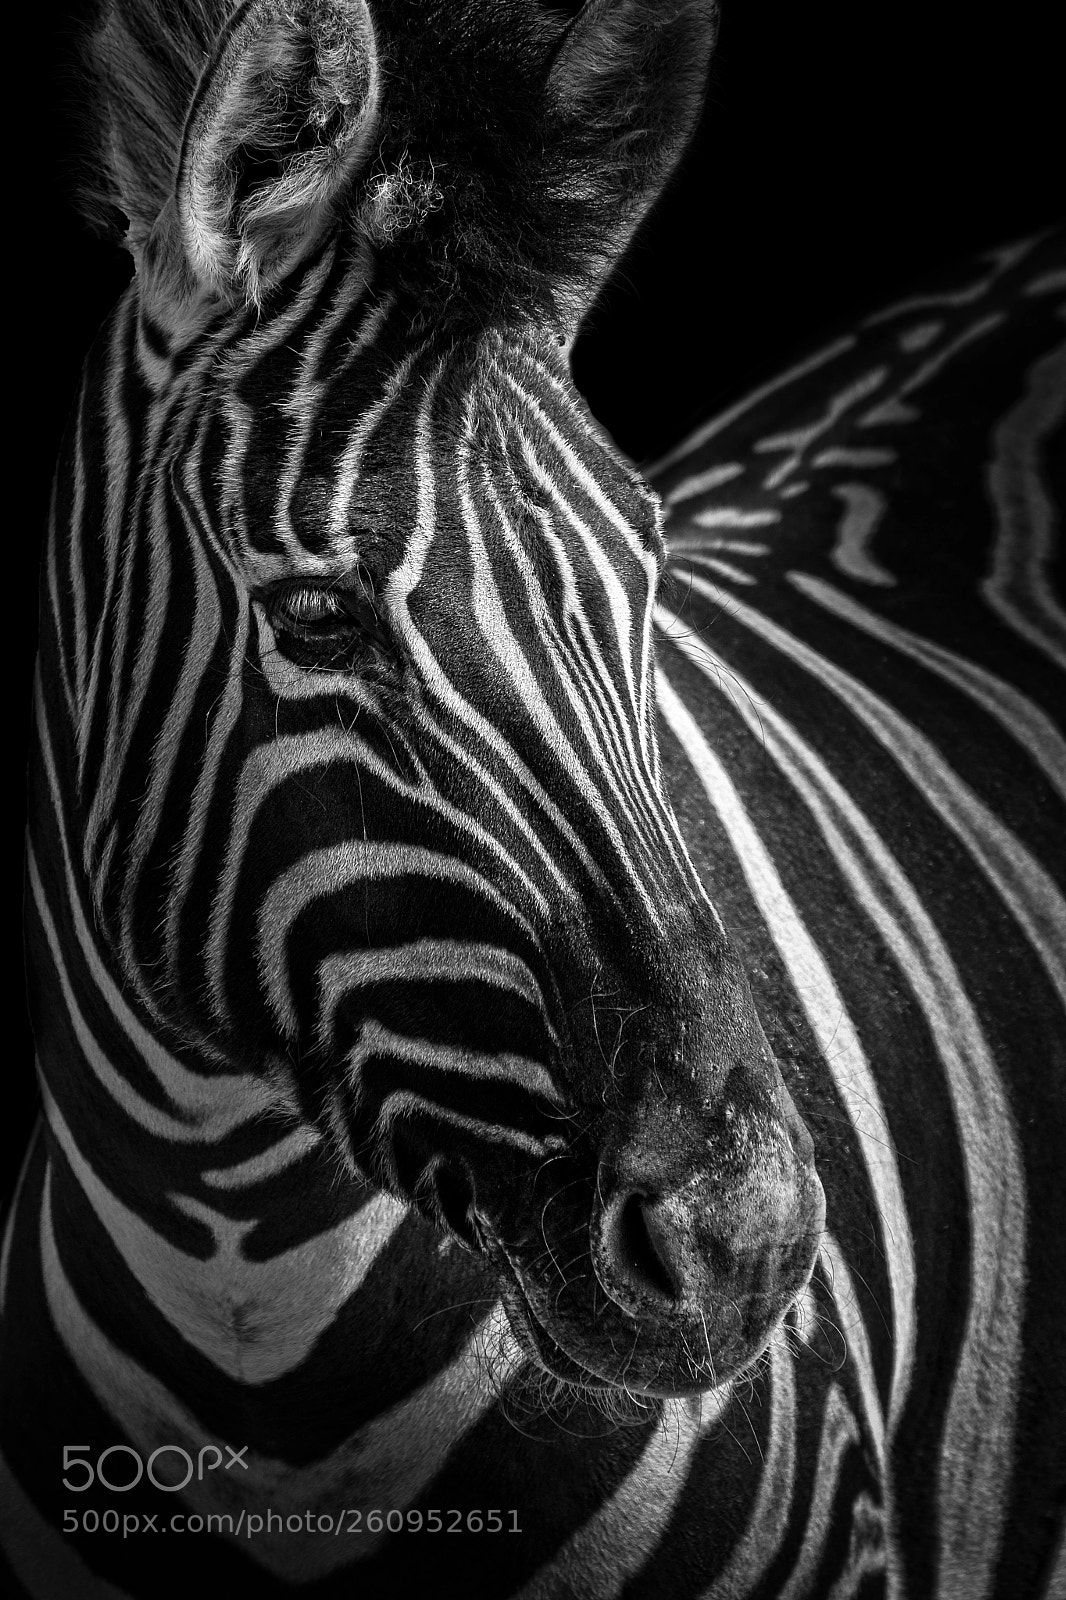 Canon EOS 40D sample photo. Zebra portrait photography